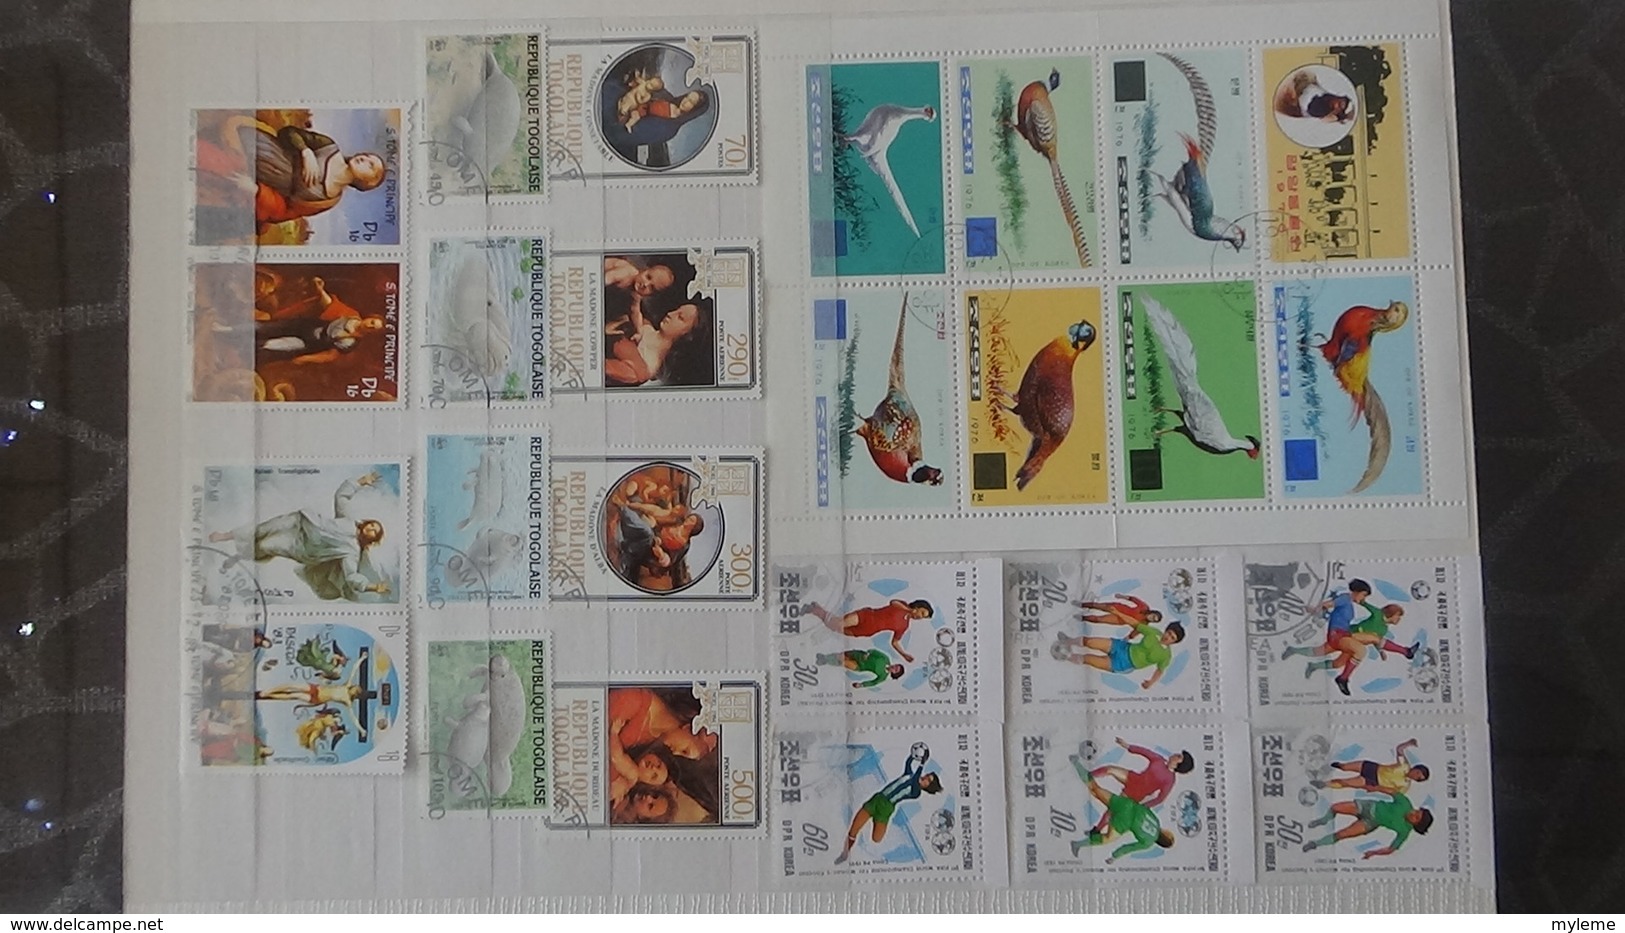 146 blocs et plusieurs timbres oblitérés de différents pays dont France 1/2 bloc Philatec 64 **. Voir commentaires !!!